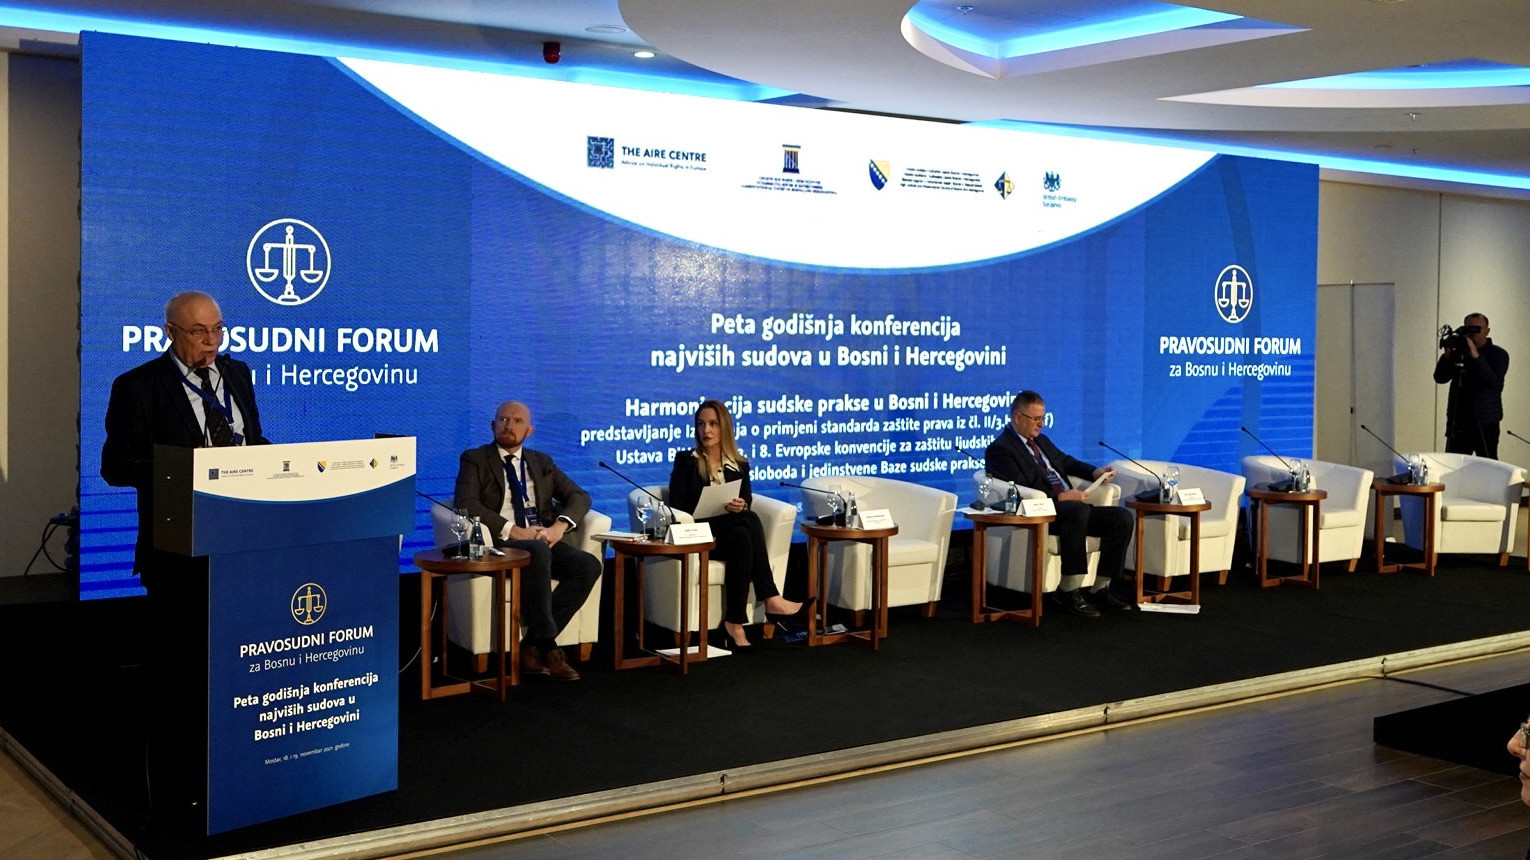 Peta godišnja konferencija u okviru Pravosudnog foruma za Bosnu i Hercegovinu